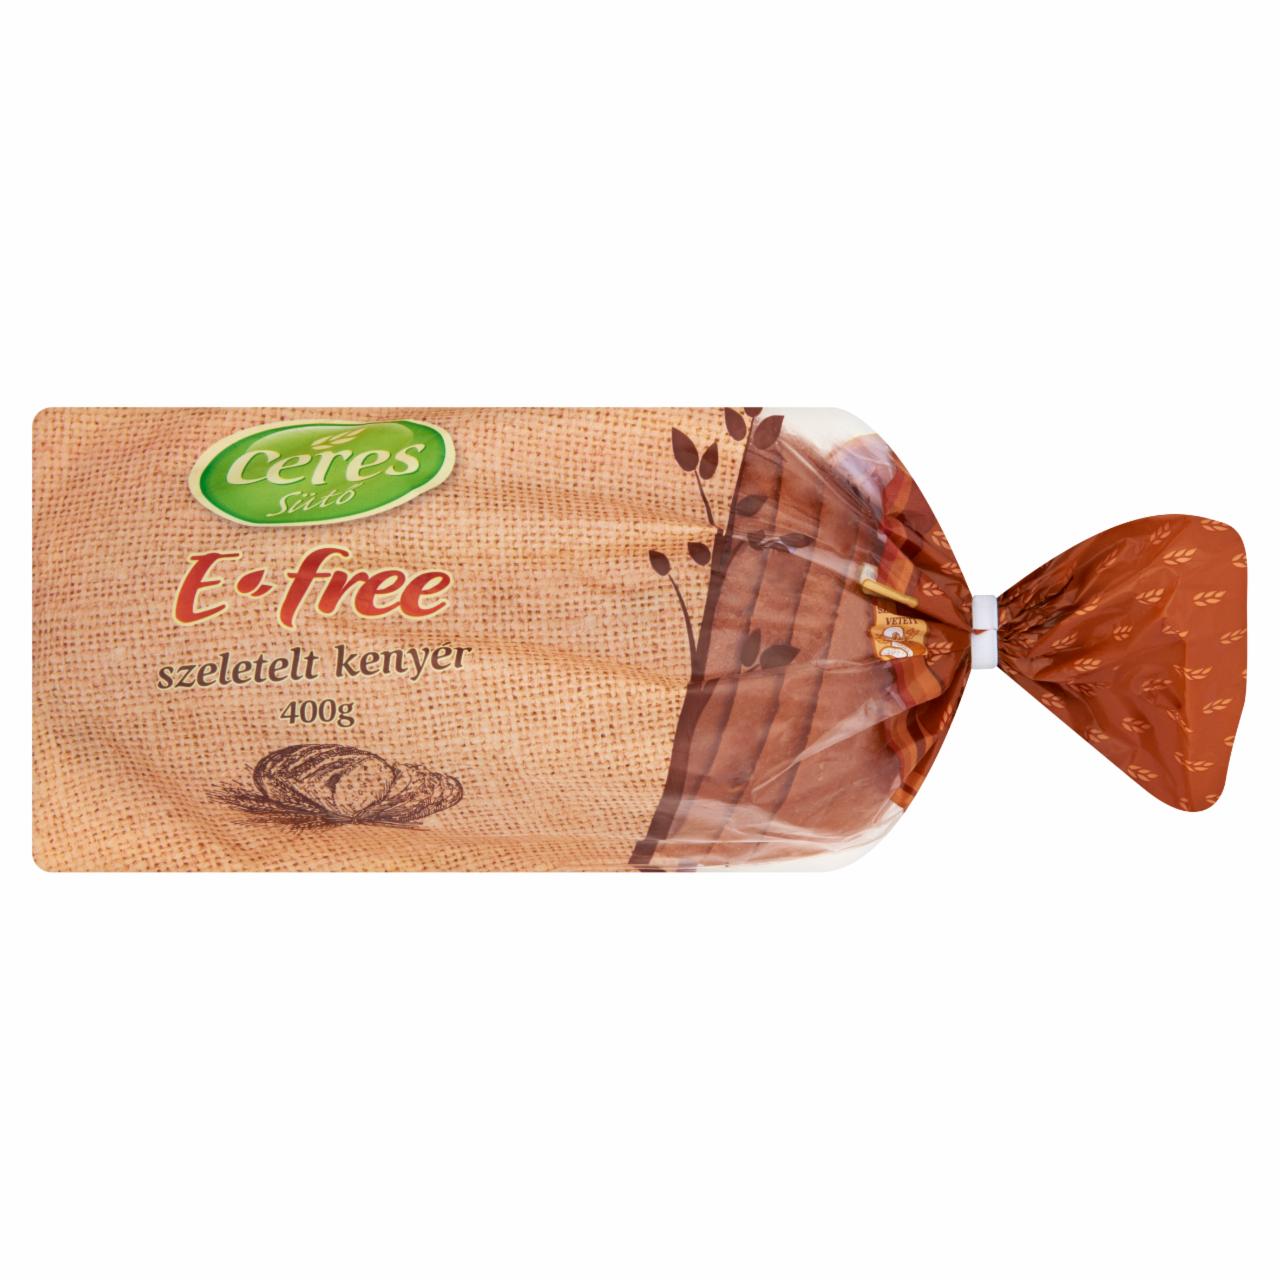 Képek - Ceres Sütő E-Free szeletelt kenyér 400 g